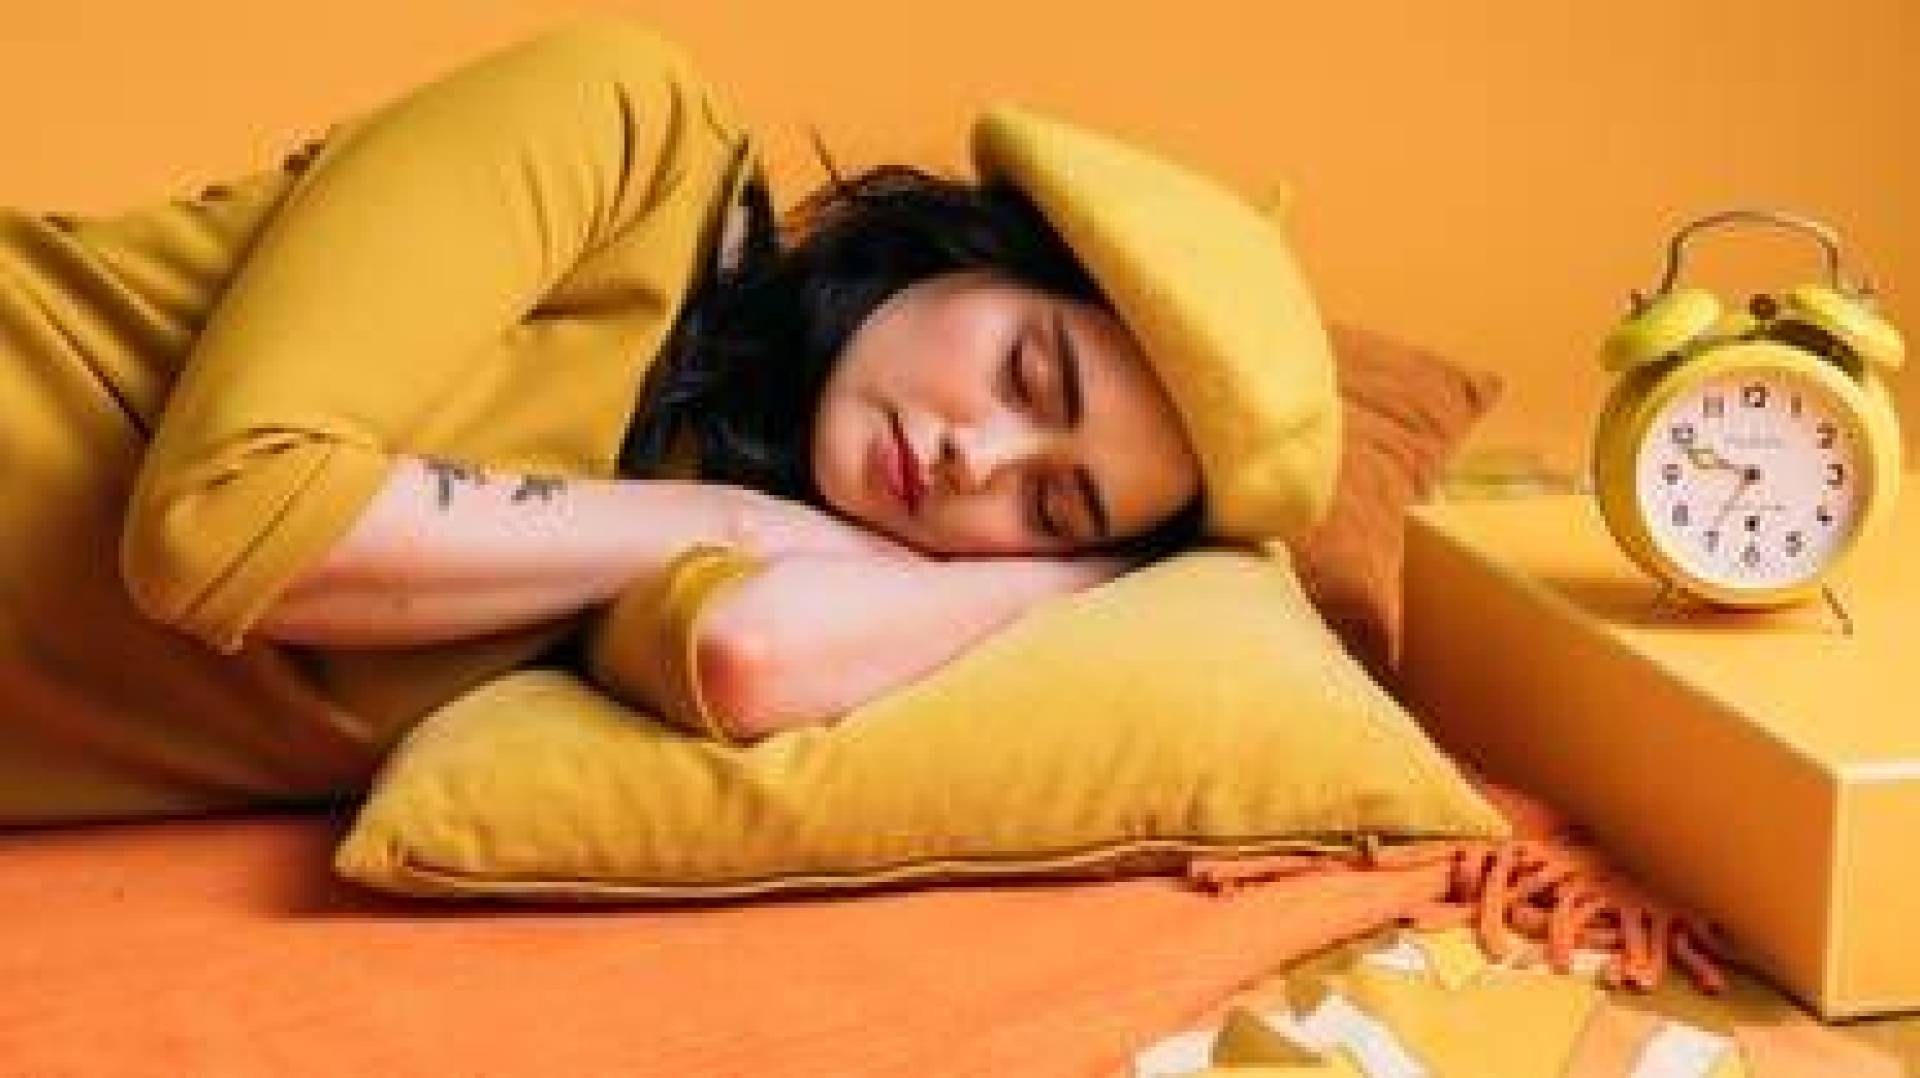 زيادة خطر الإصابة بداء السكري بسبب النوم المبالغ به